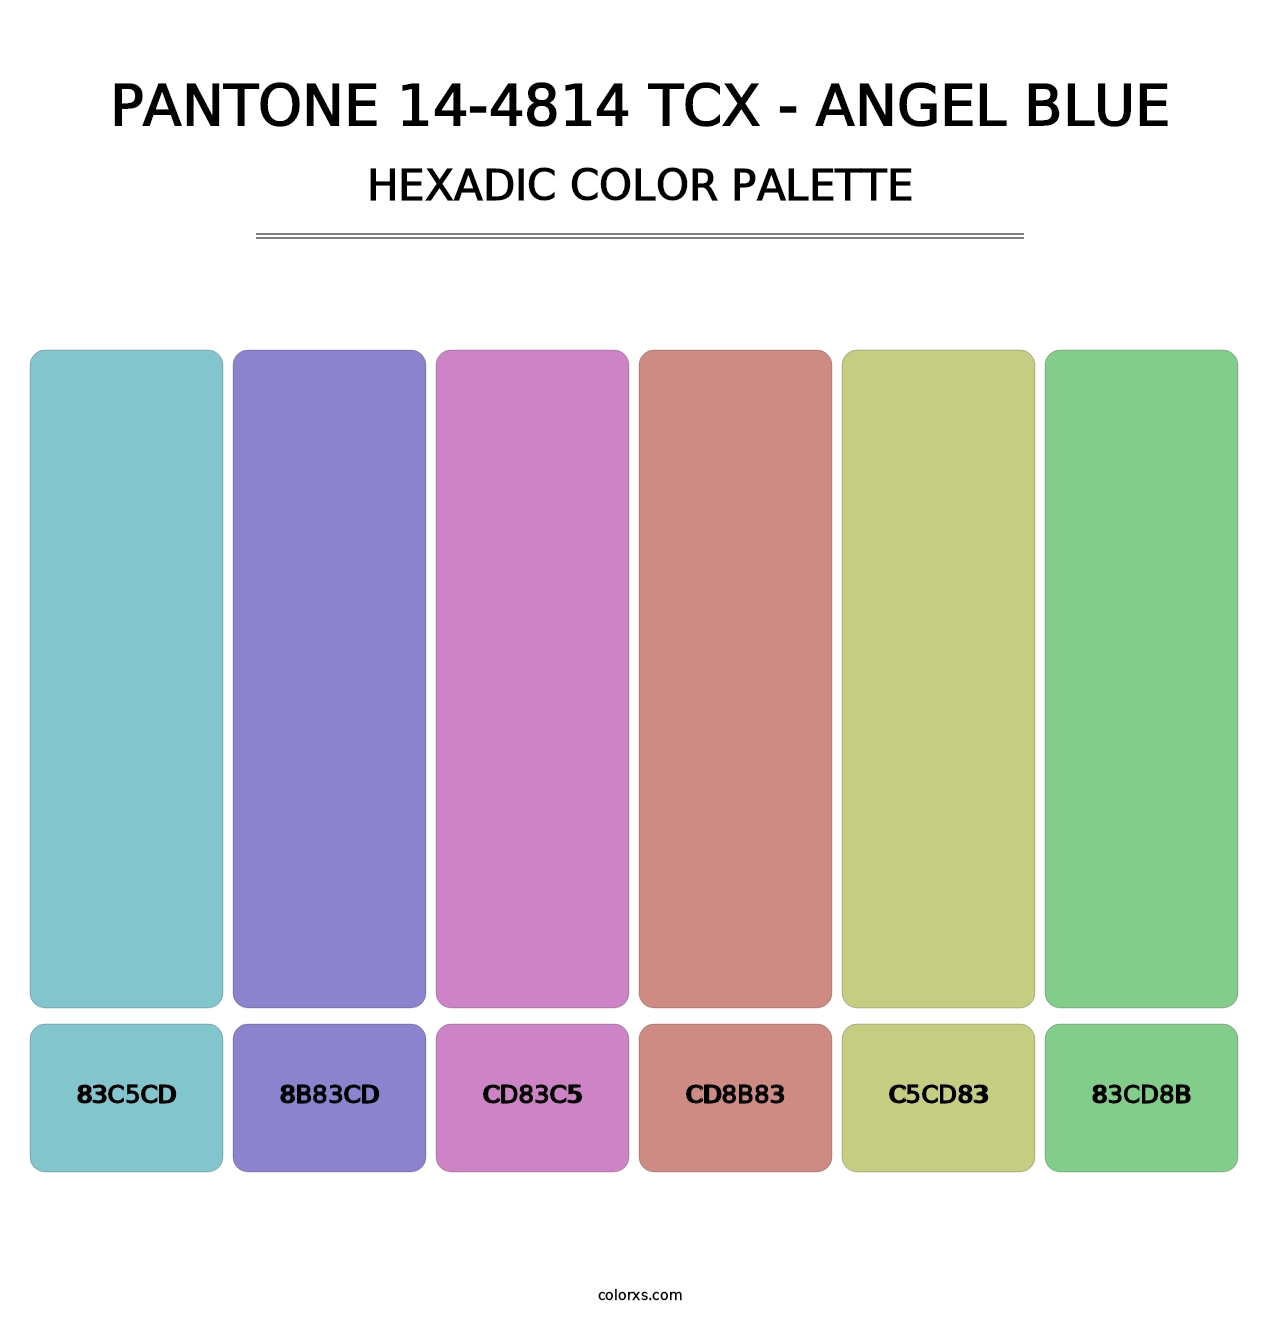 PANTONE 14-4814 TCX - Angel Blue - Hexadic Color Palette